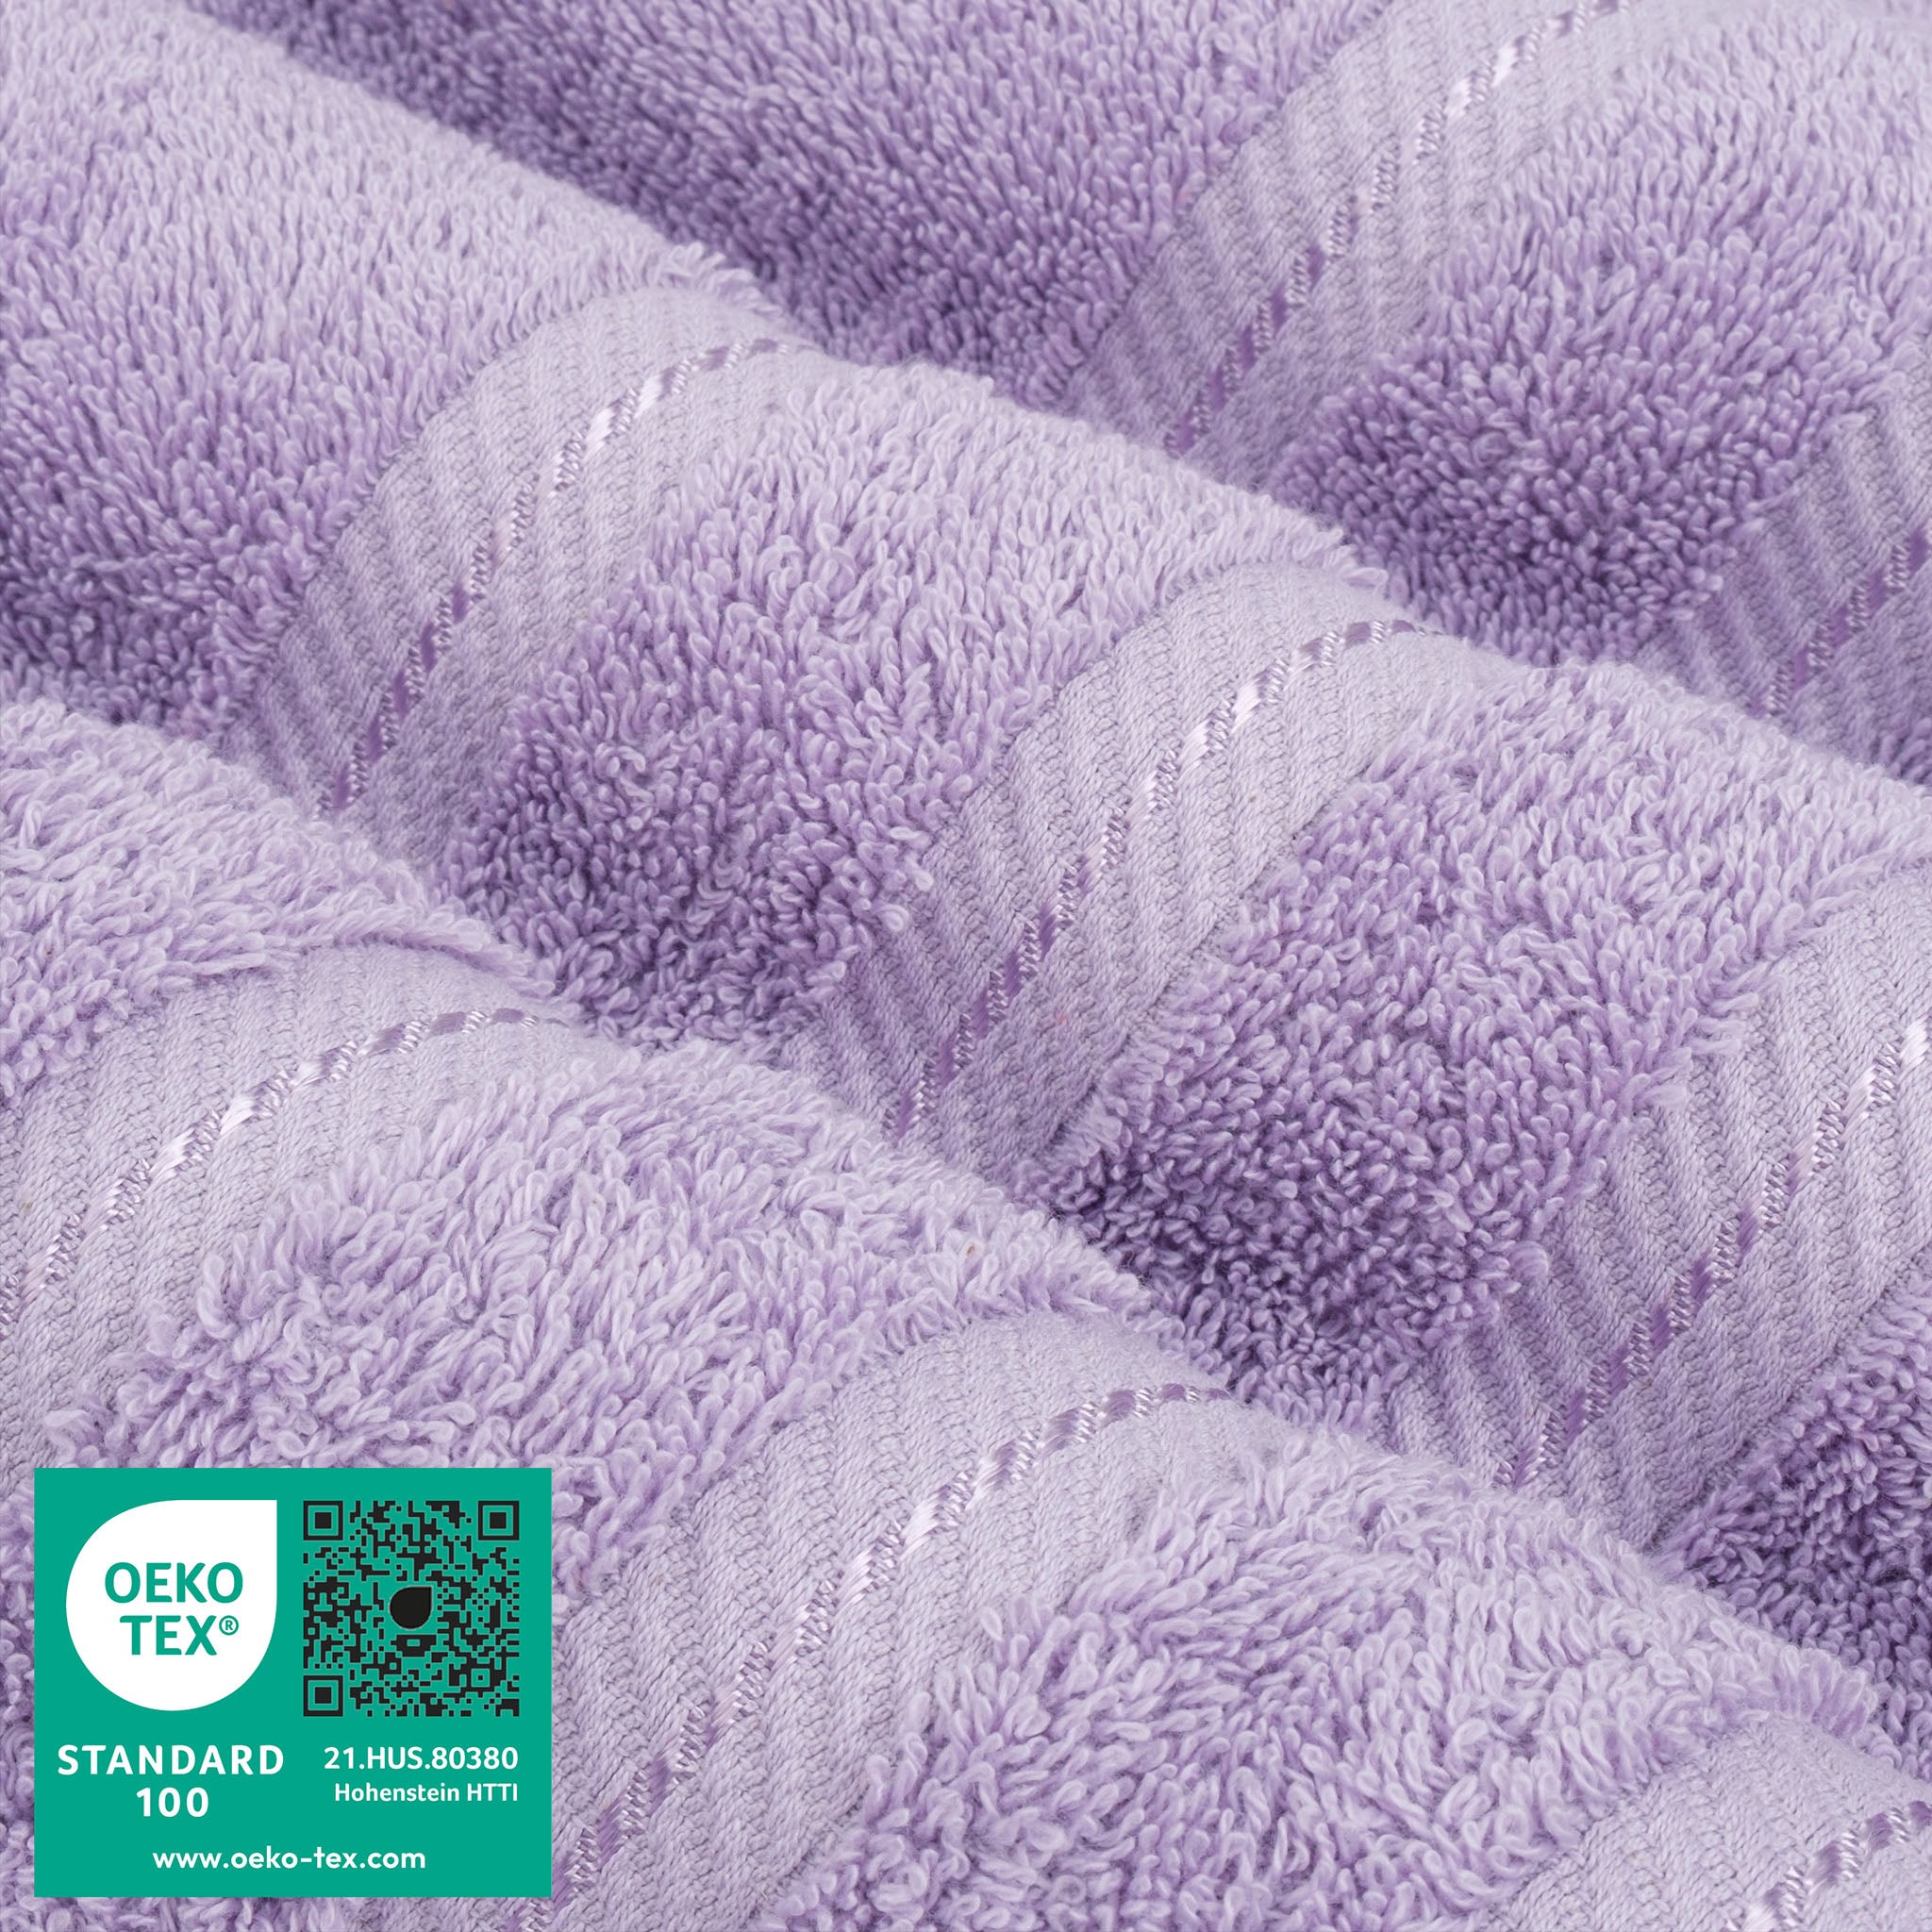 American Soft Linen 100% Turkish Cotton 6 Piece Towel Set Wholesale lilac-3